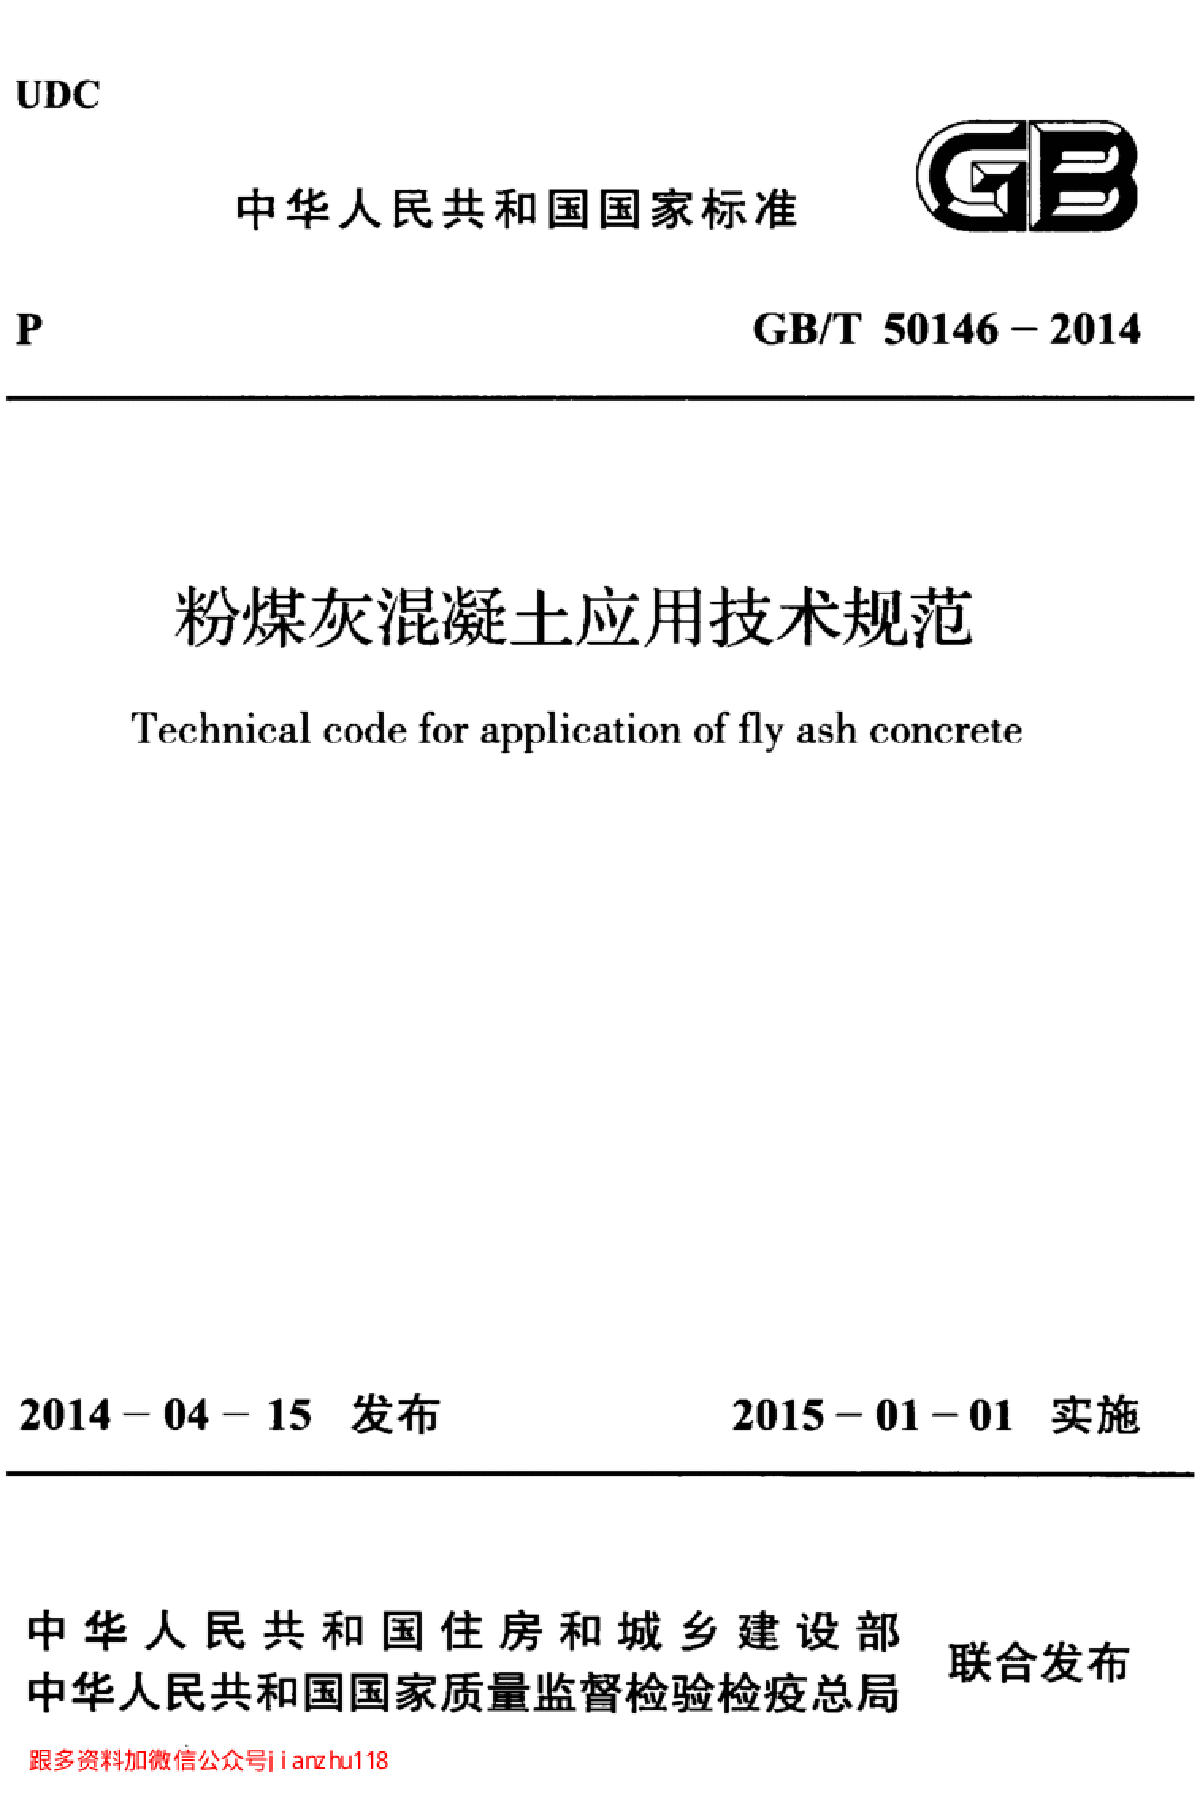 最新高清GBT 50146-2014 粉煤灰混凝土应用技术规范